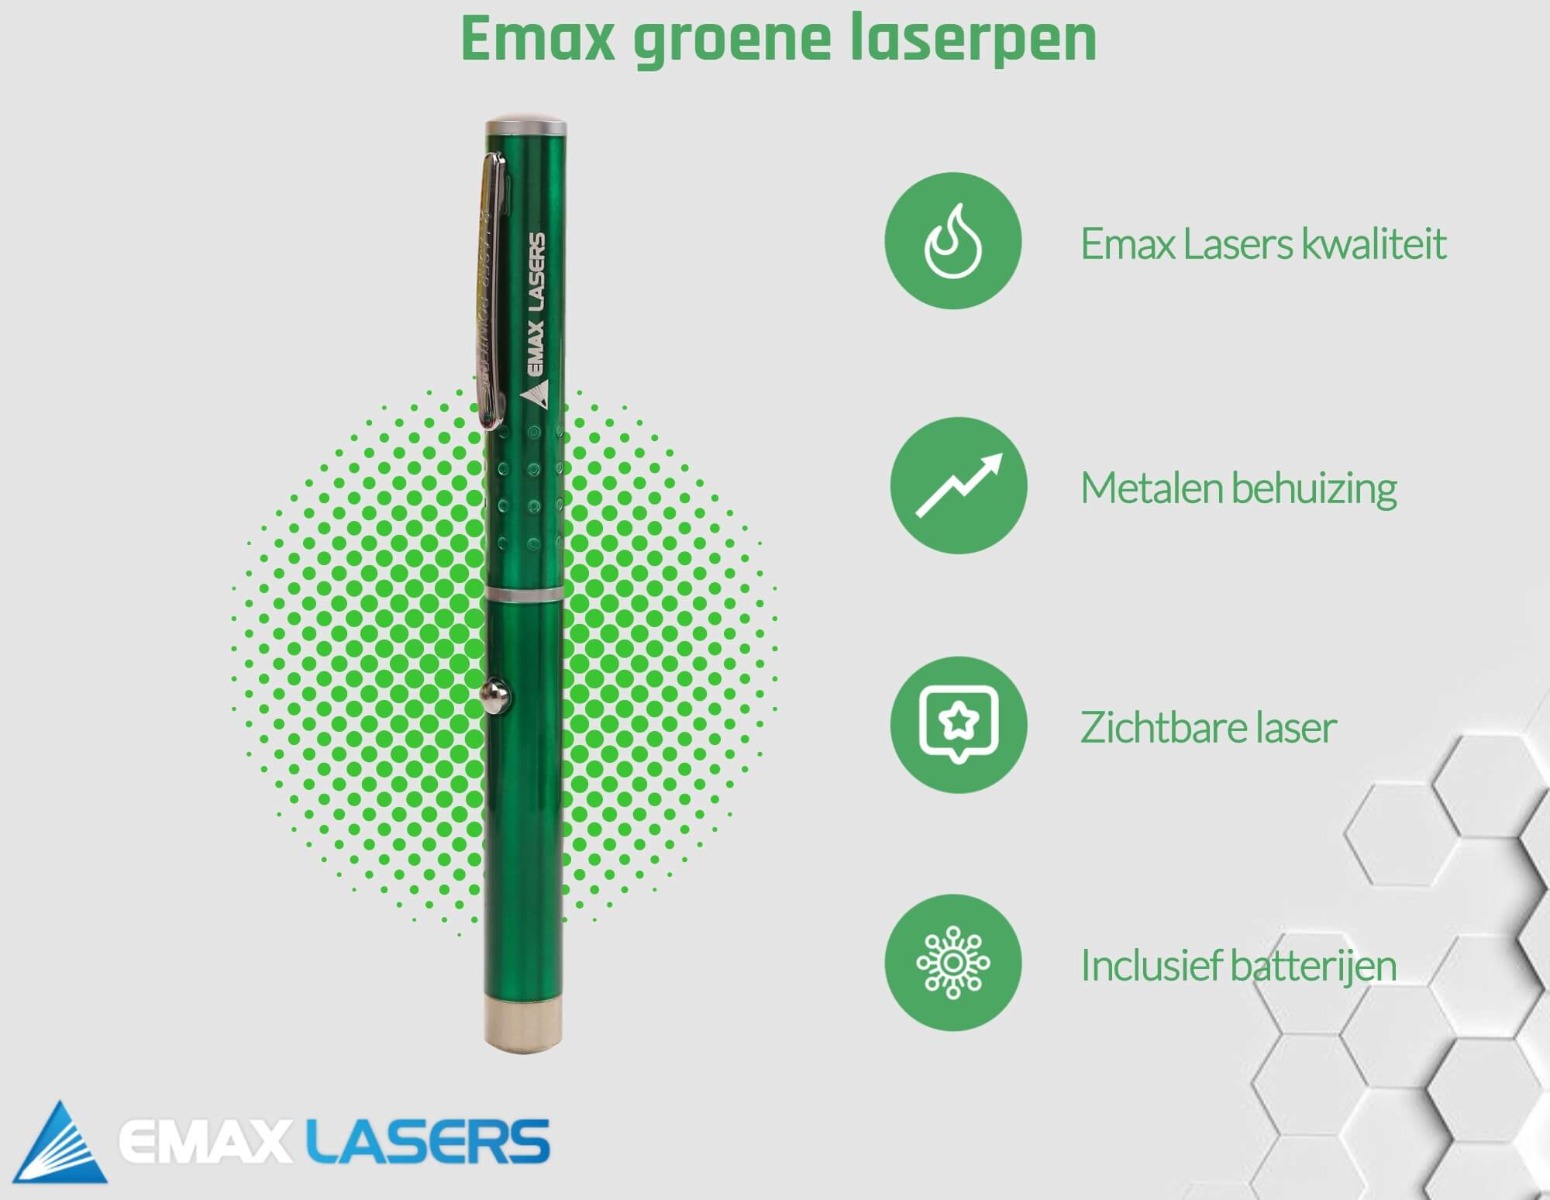 emax groene laserpen banner